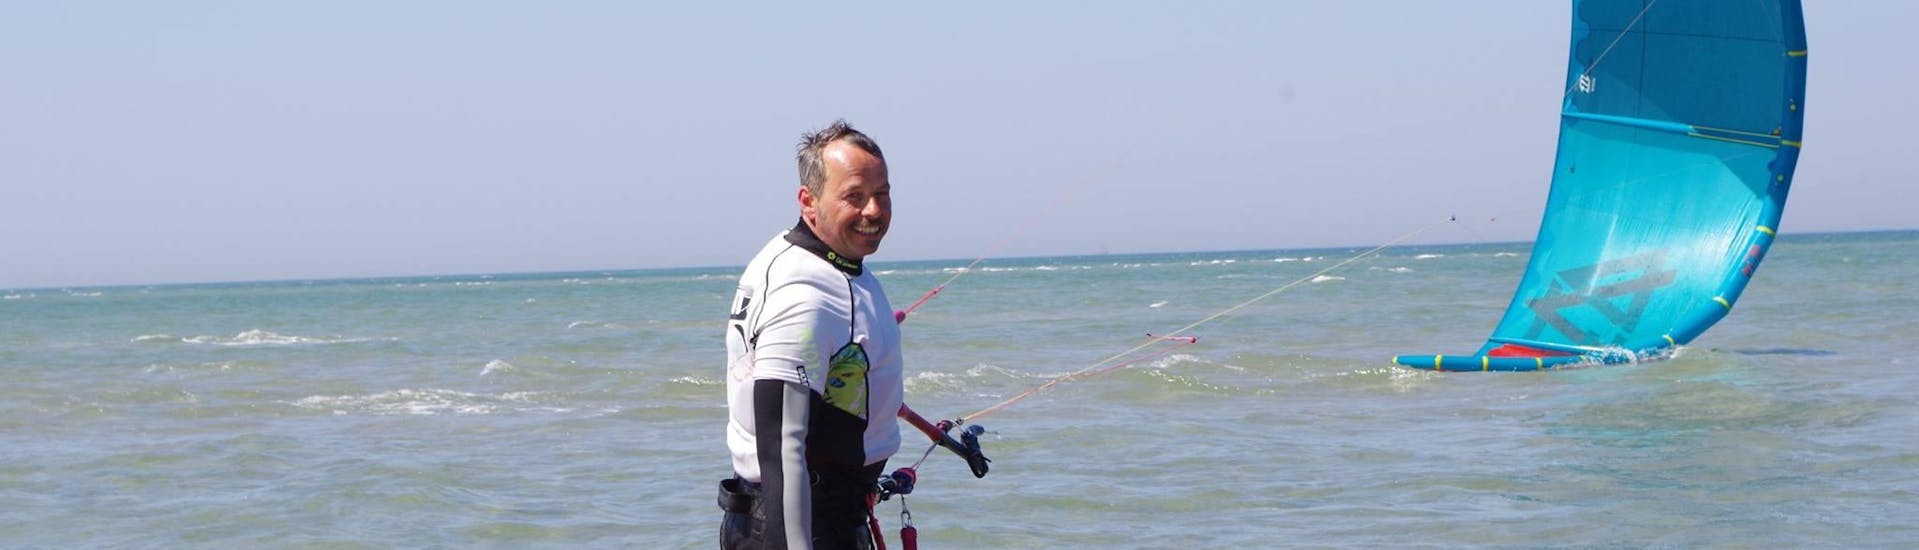 Ein Mann mit seiner Kitesurfingausrüstung im Wasser während des Privates Kitesurf Coaching ab 8 Jahren in Fehmarn mit Kitesurf-Guide Fehmarn.